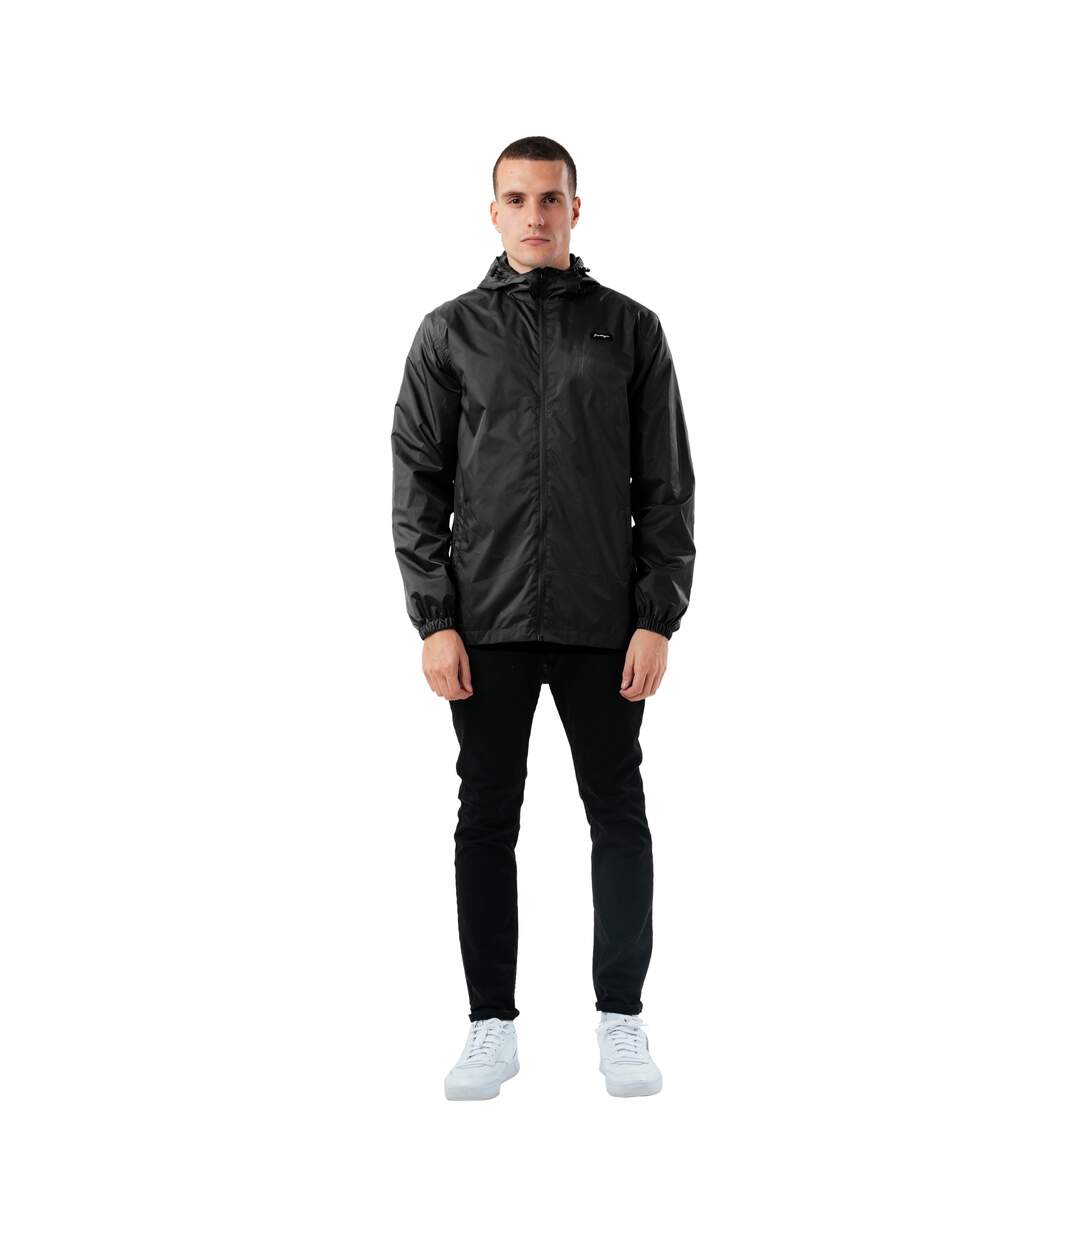 Hype Mens Showerproof Style Jacket (Black)